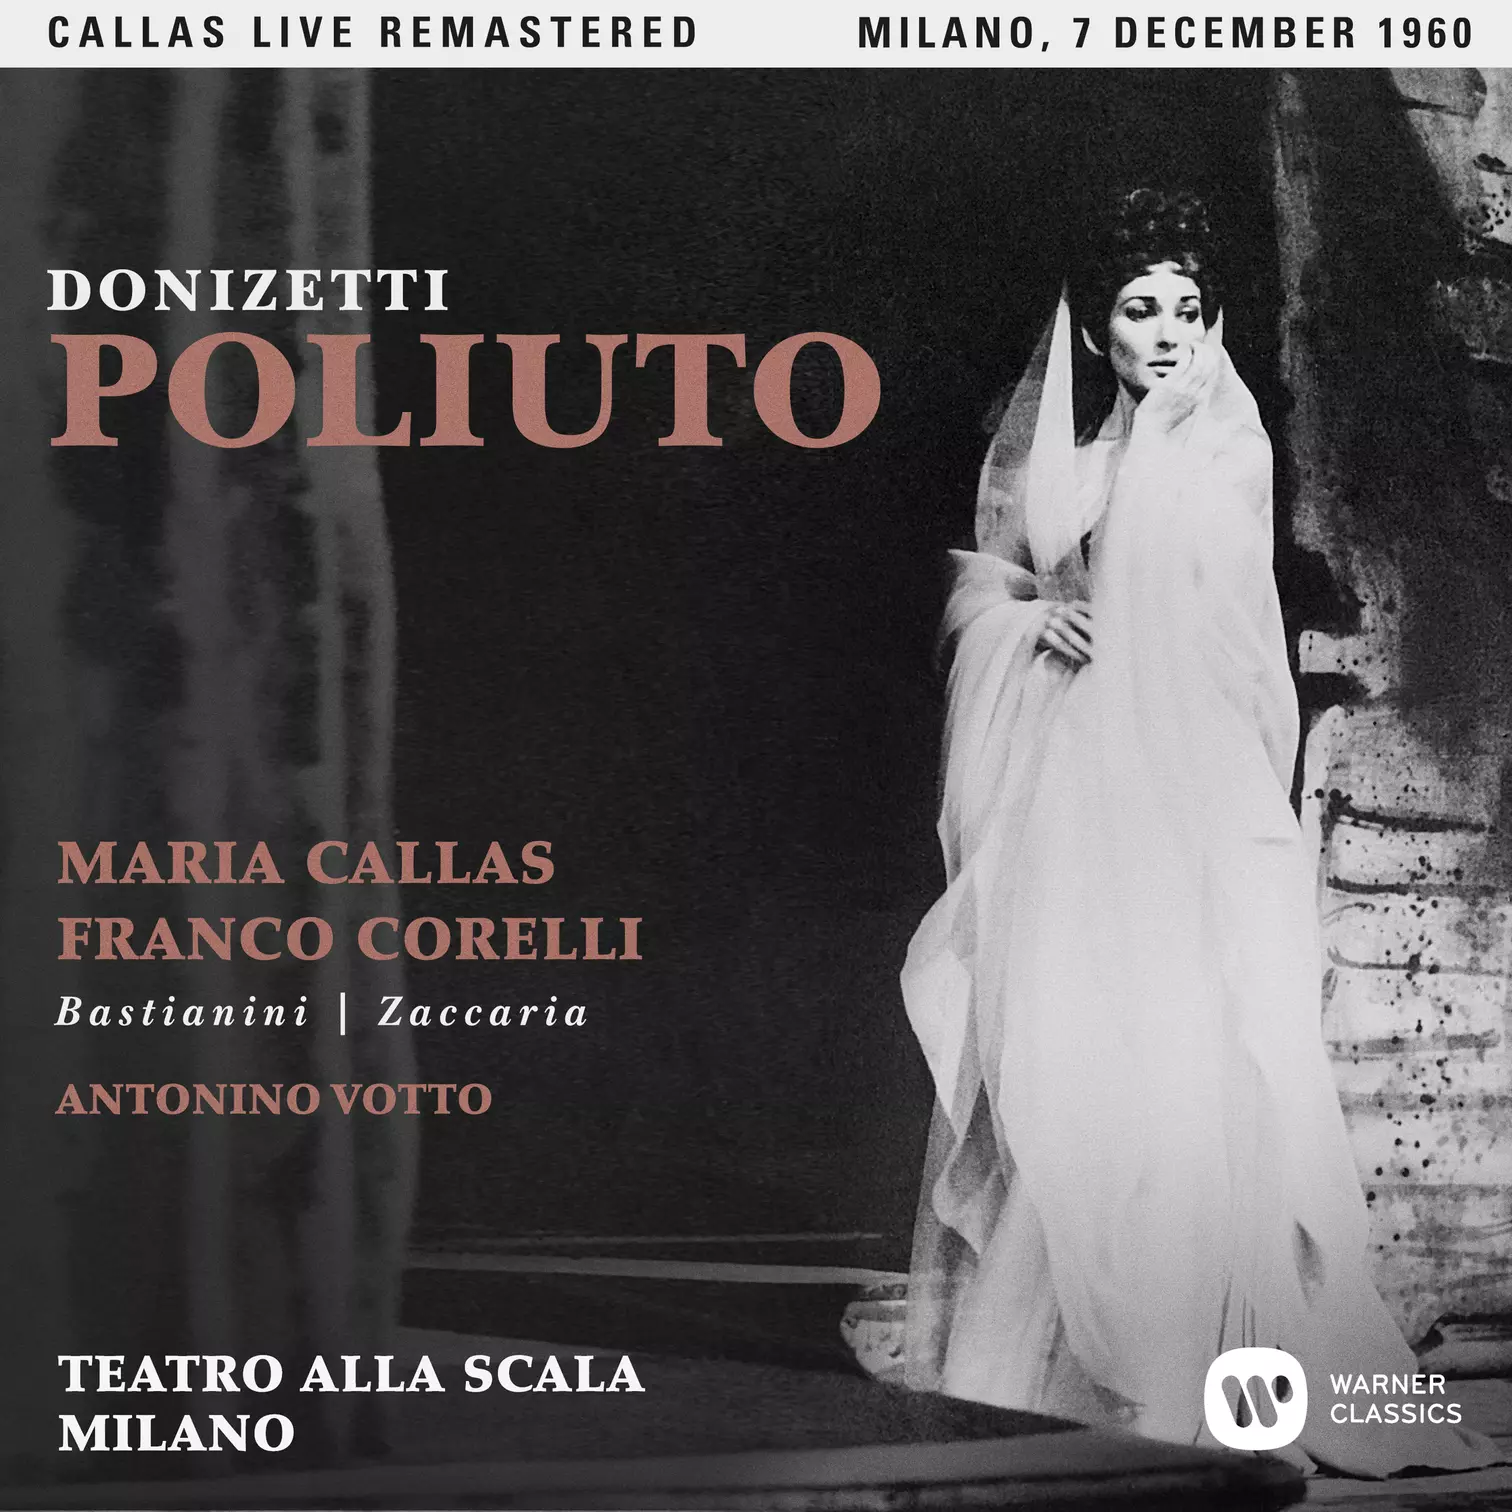 Donizetti: Poliuto (1960 - Milan) - Callas Live Remastered